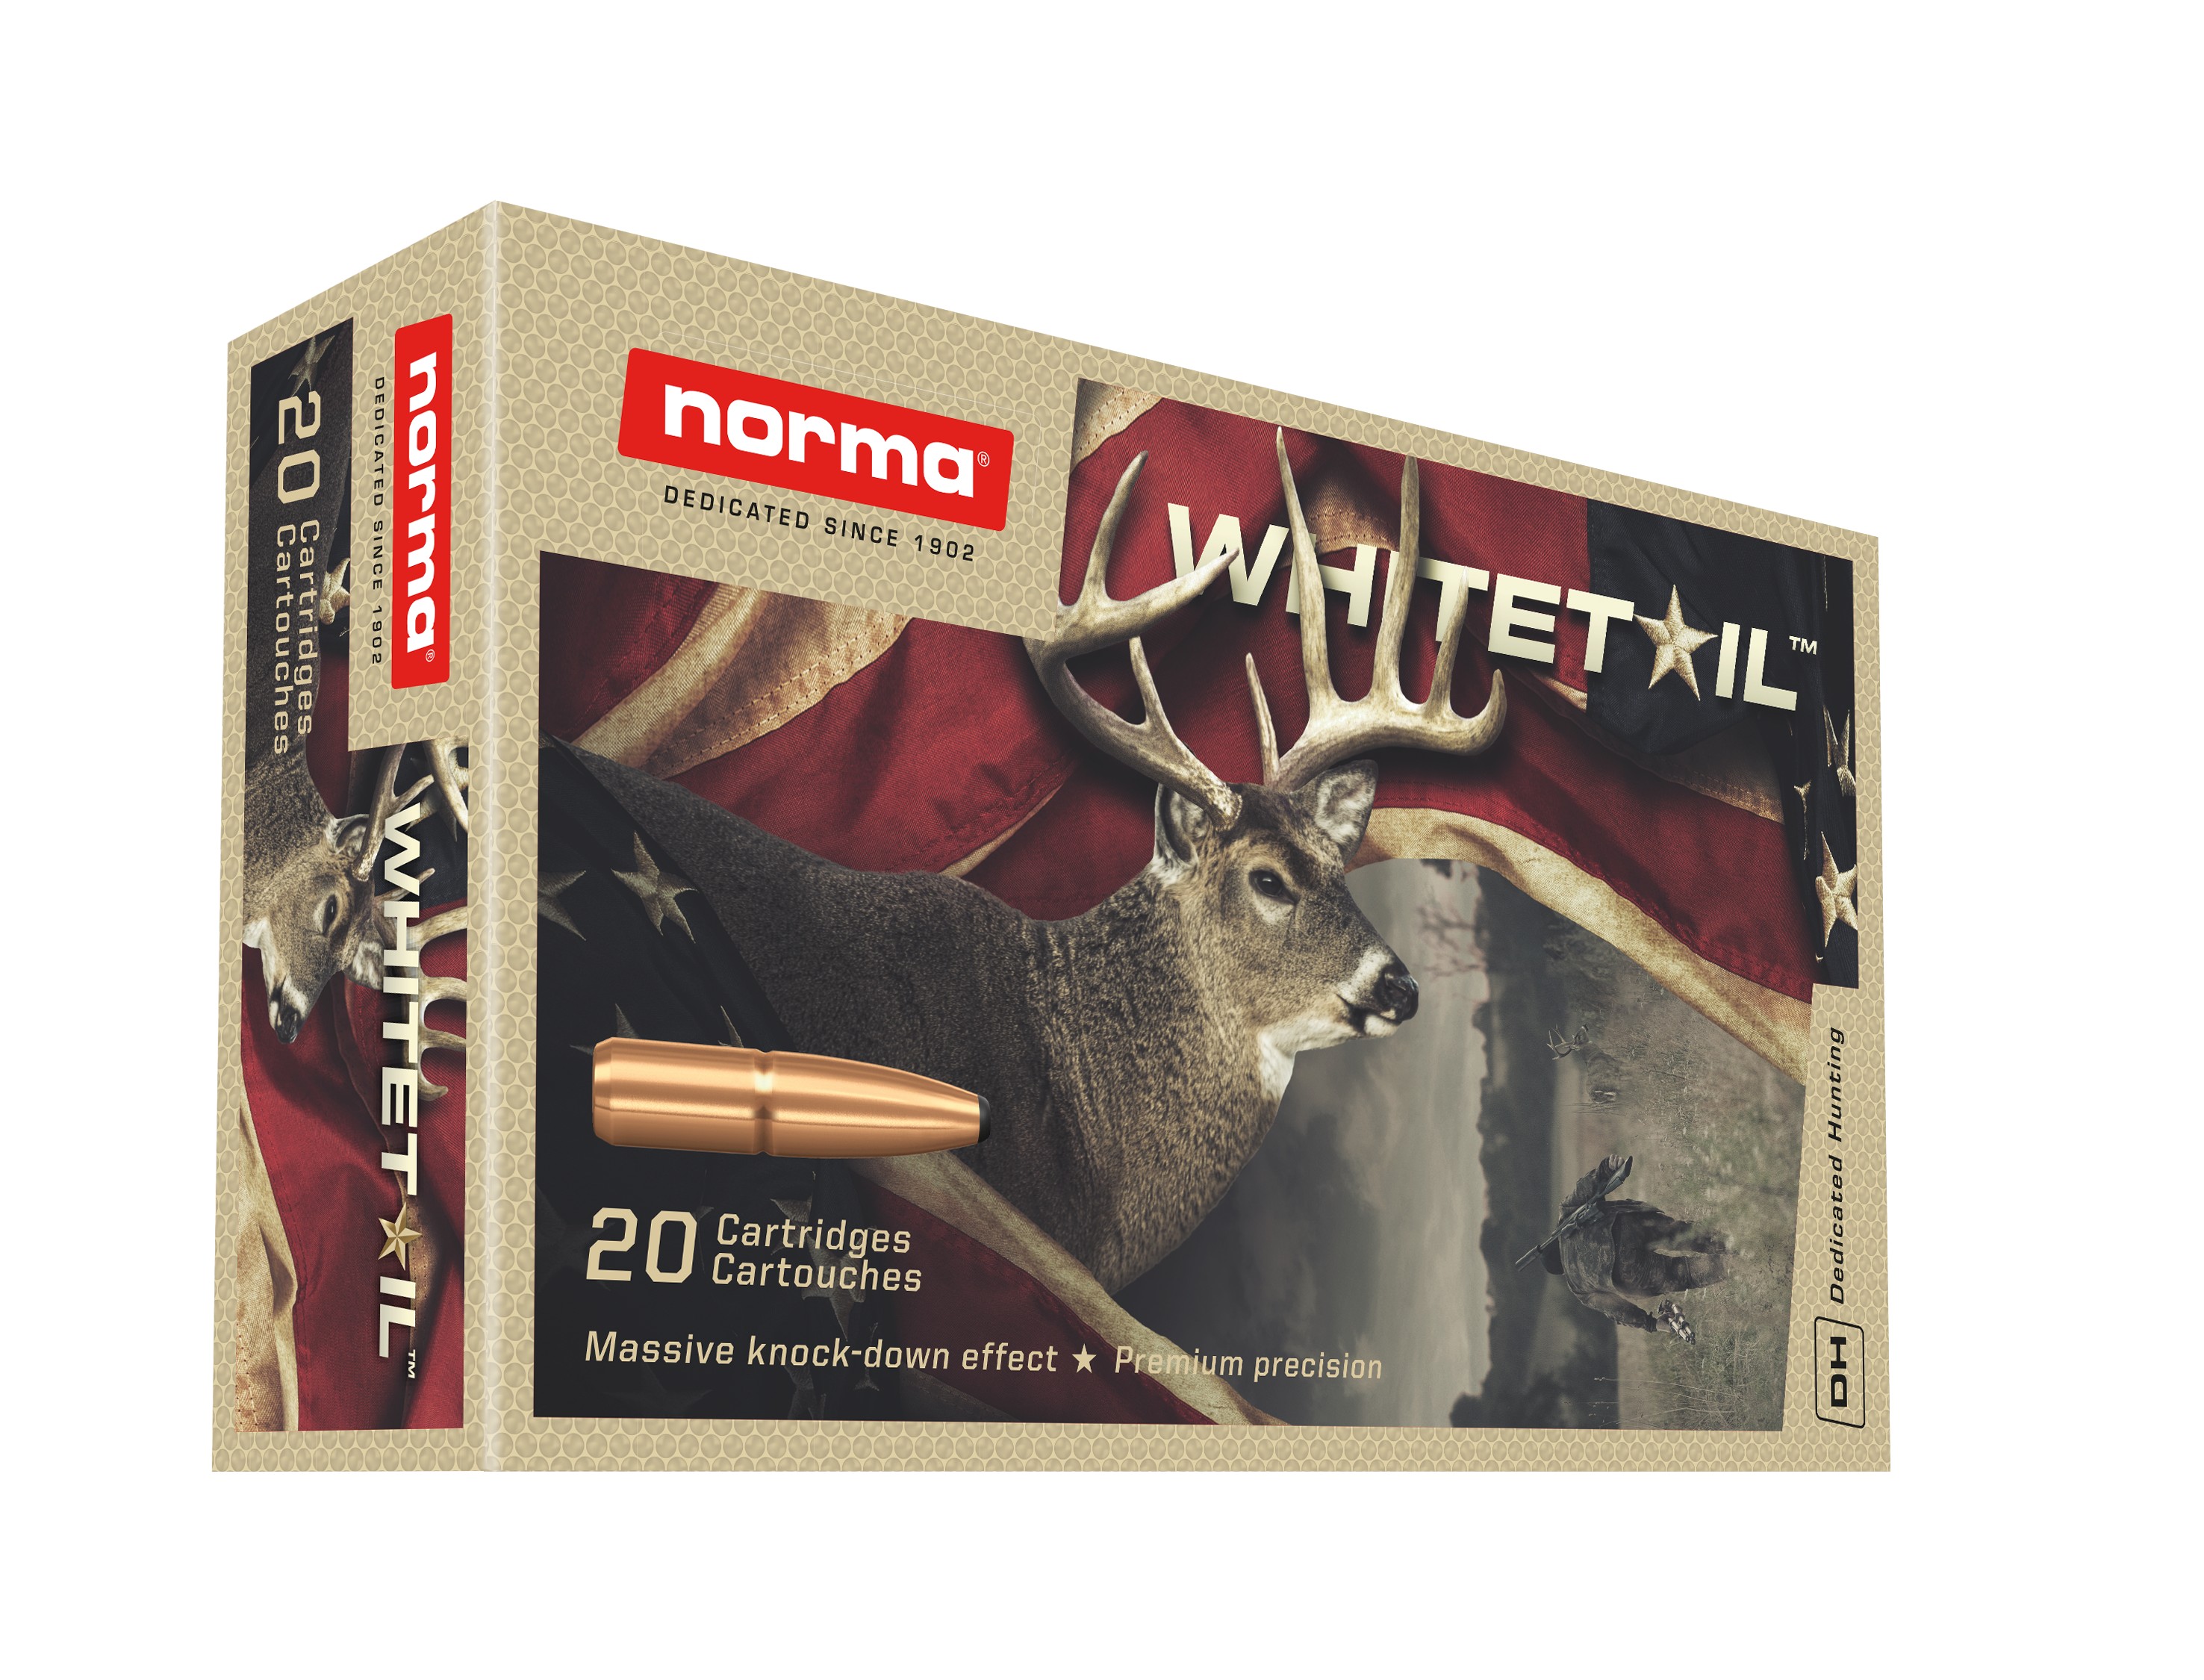 Norma Precision Deer Buck Bullets Ammunition Decal Sticker 